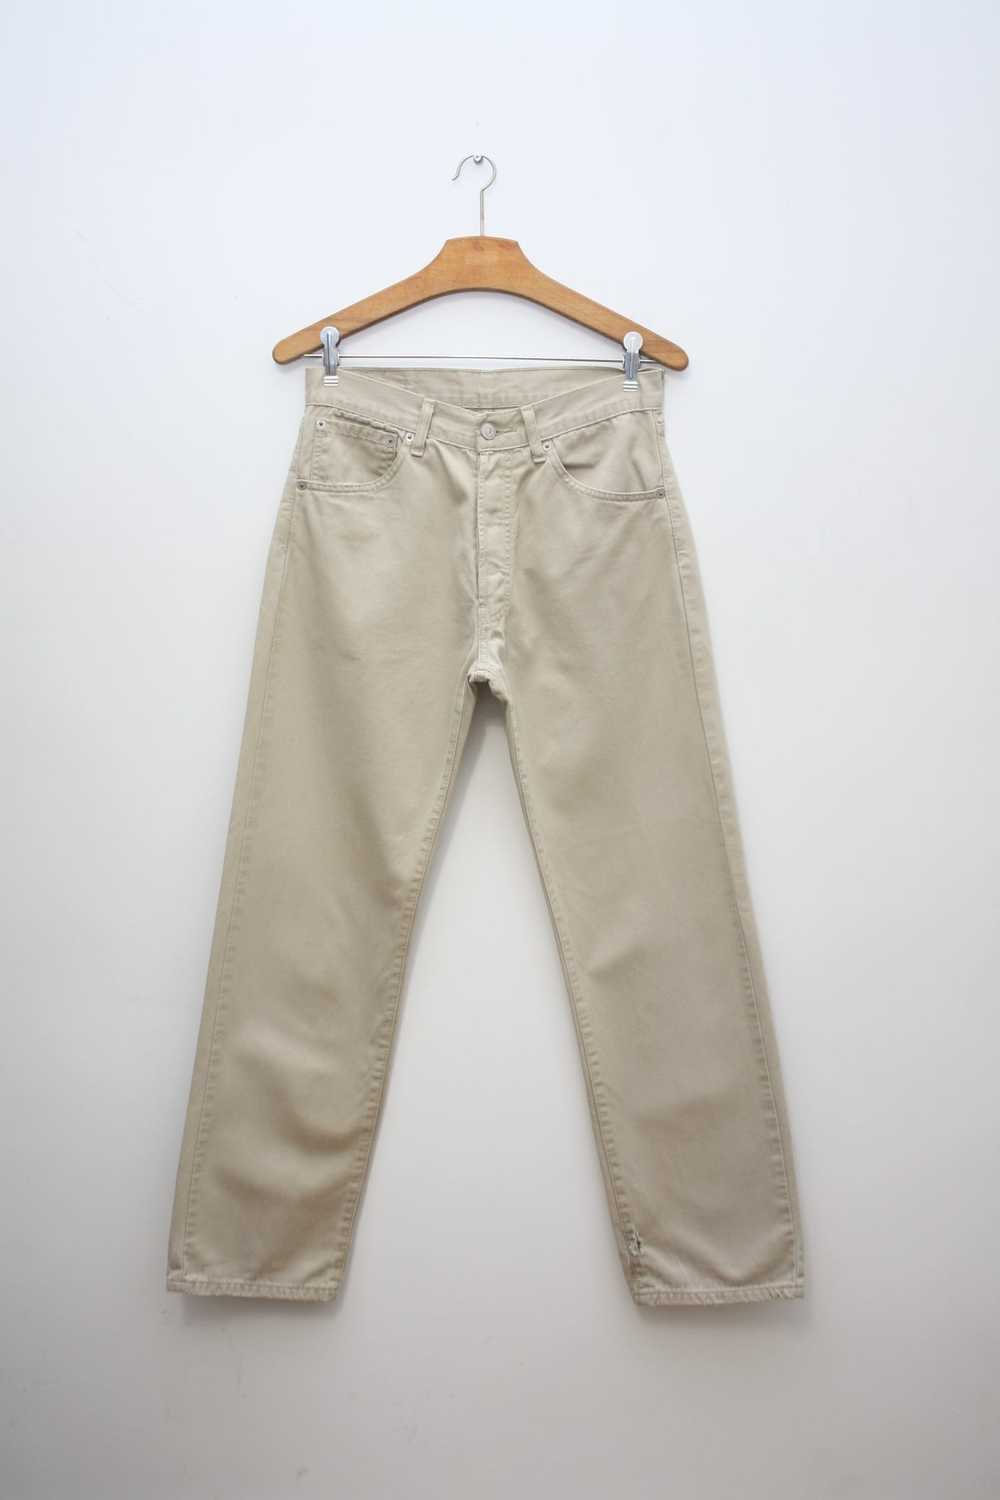 Levi's Levi's 551 Beige Denim Pants W30L30 Vintage - image 3